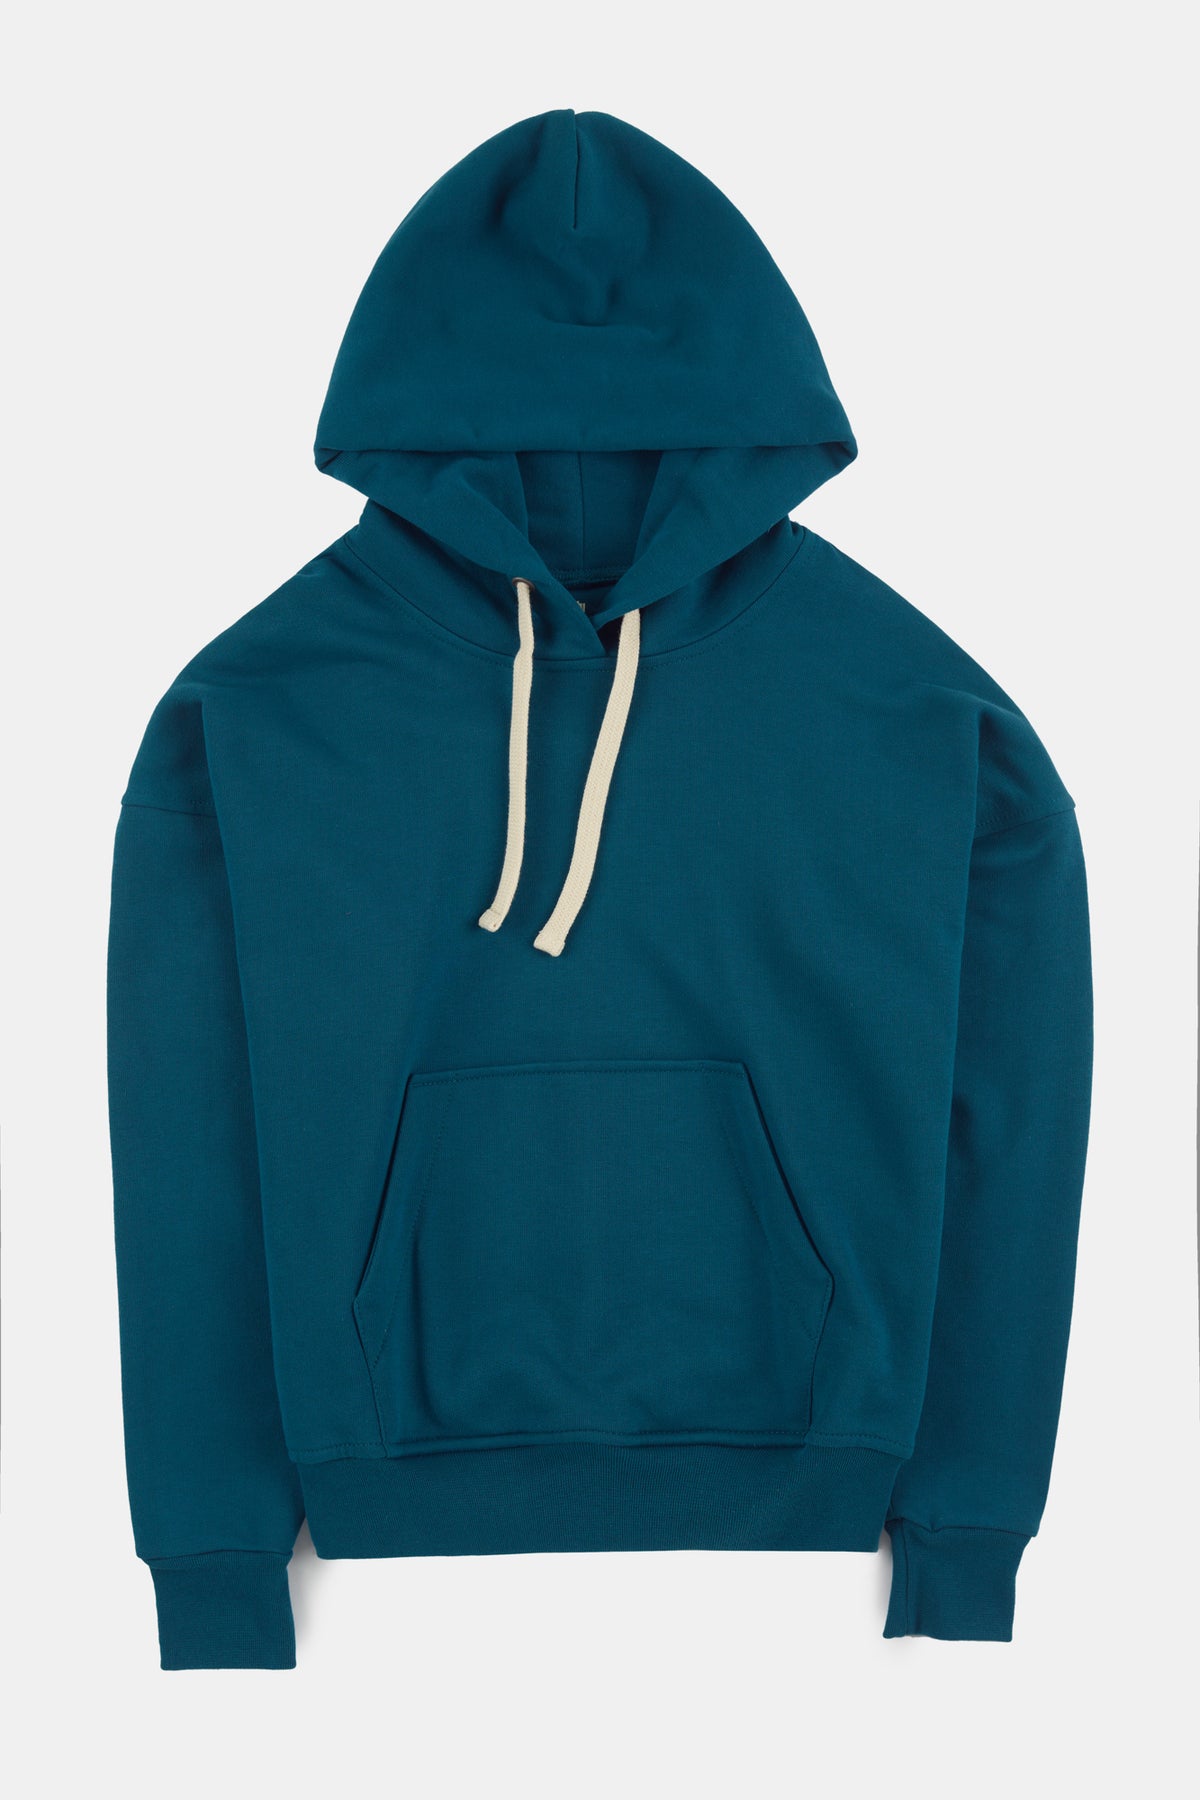 
            Flatlay product shot of hooded sweatshirt in teal